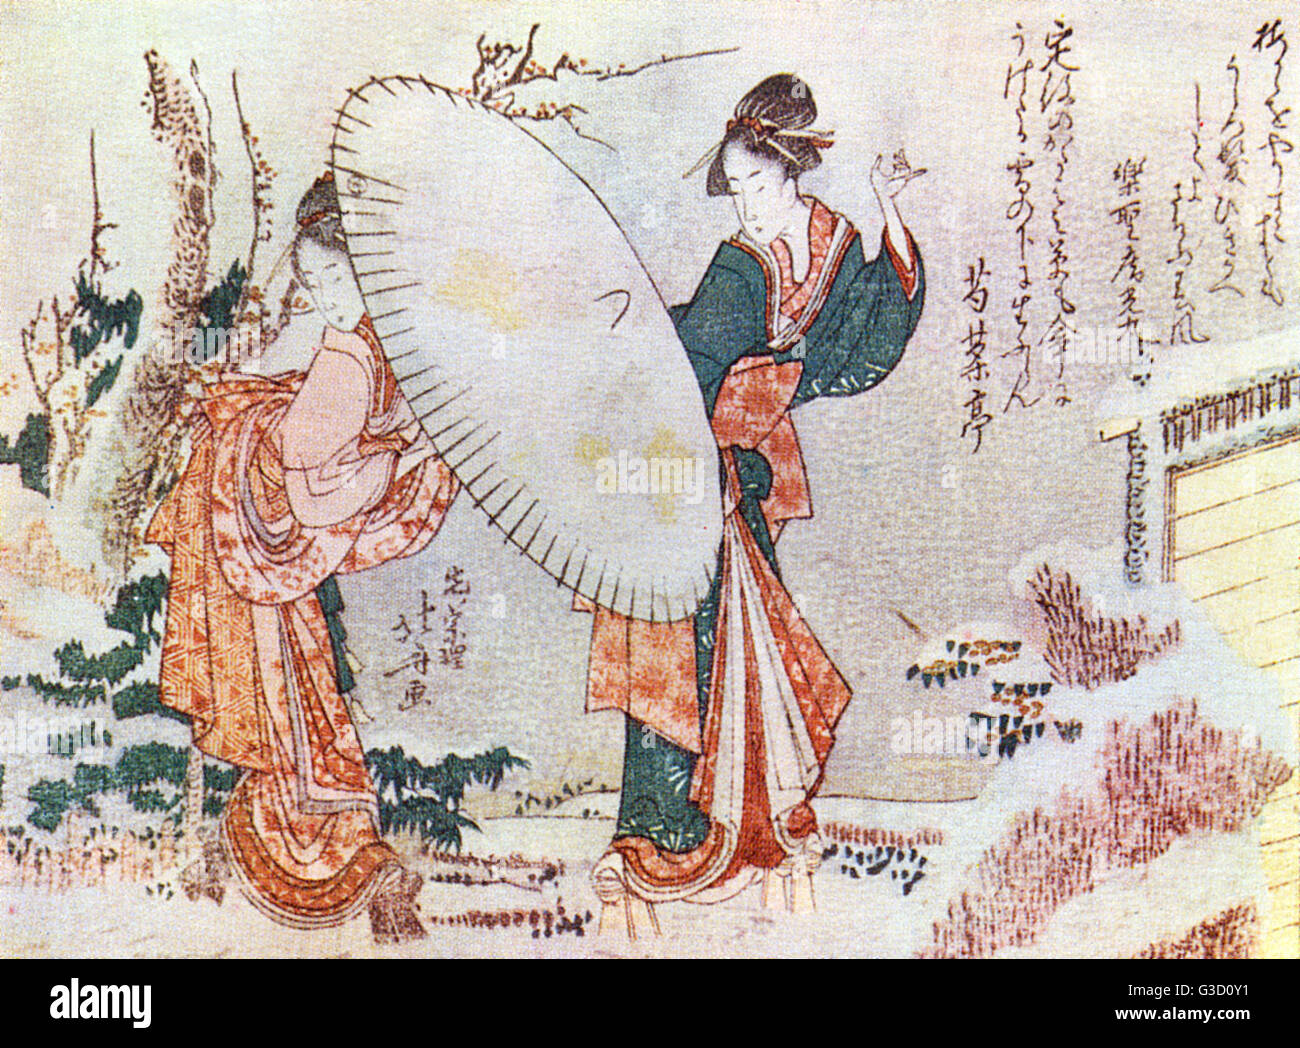 Reproduktion von einem Holzschnitt von Katsushika Hokusai (1760-1849) mit dem Titel: "Mädchen im Schnee wandern" Datum: circa Anfang des 19. Jahrhunderts Stockfoto